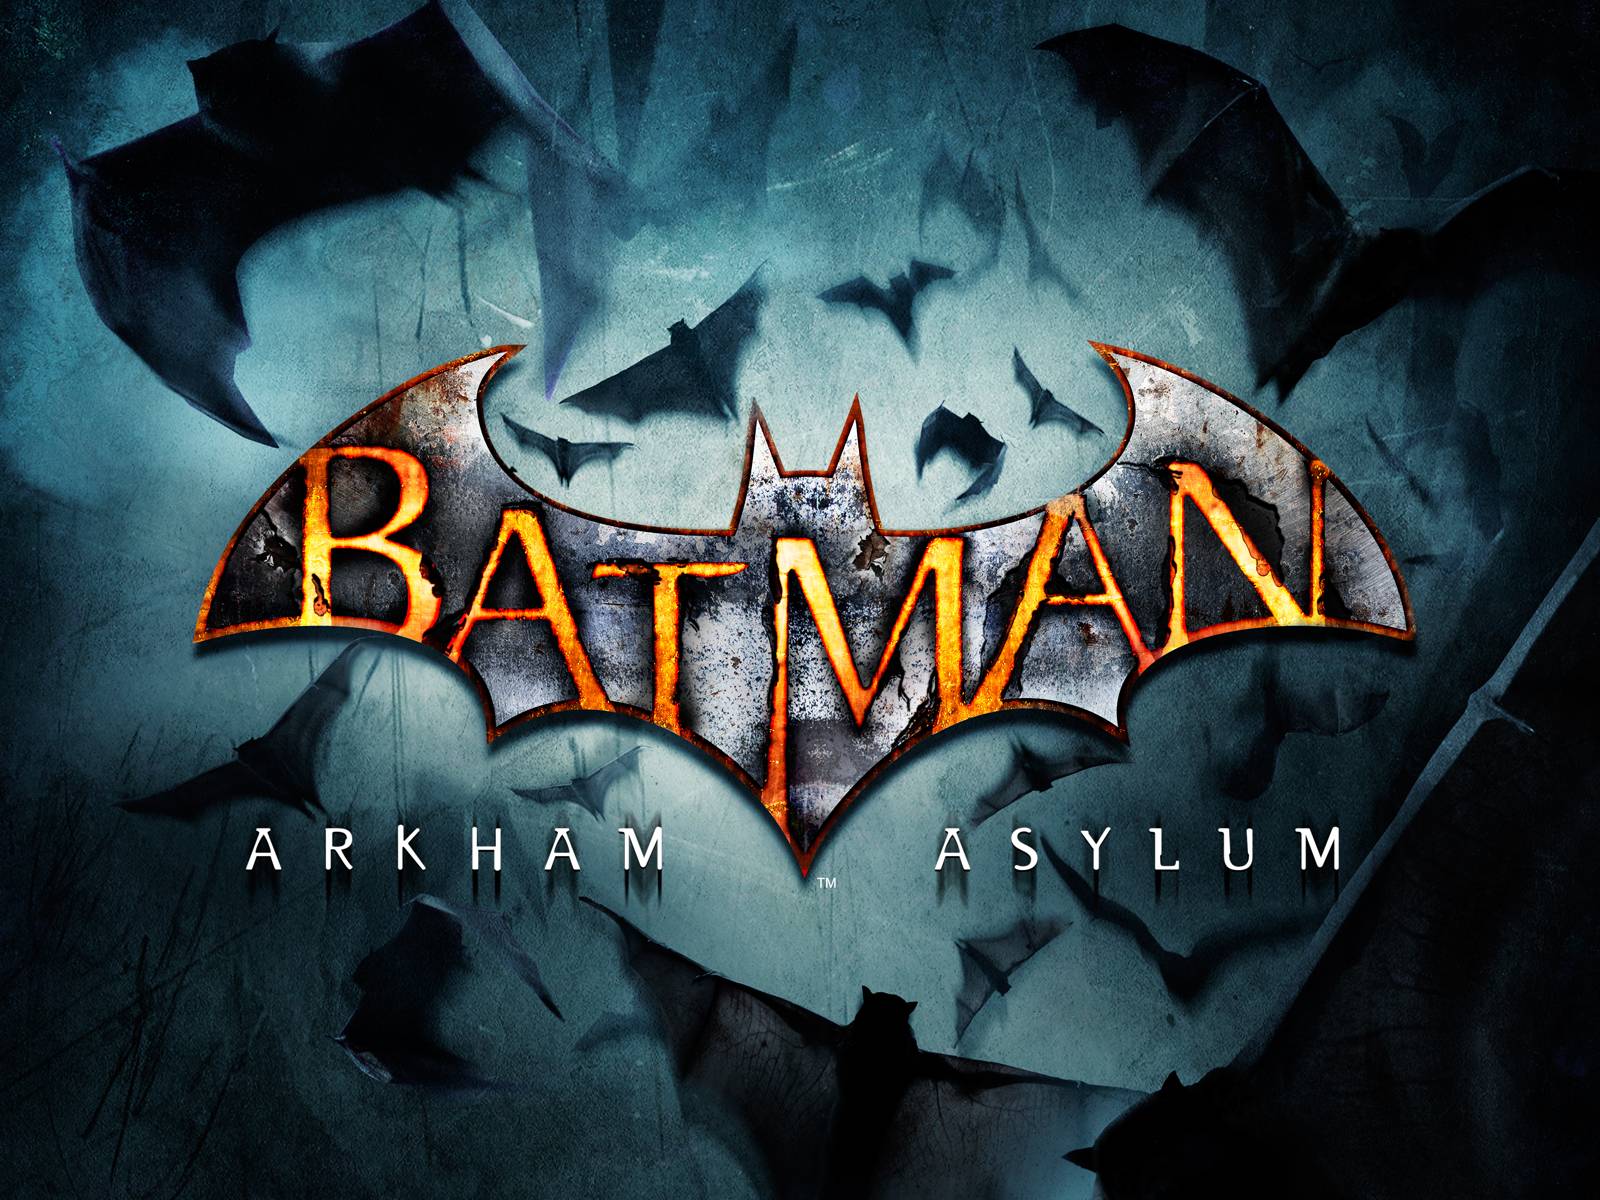 Fond ecran, wallpapers Batman : Arkham Asylum